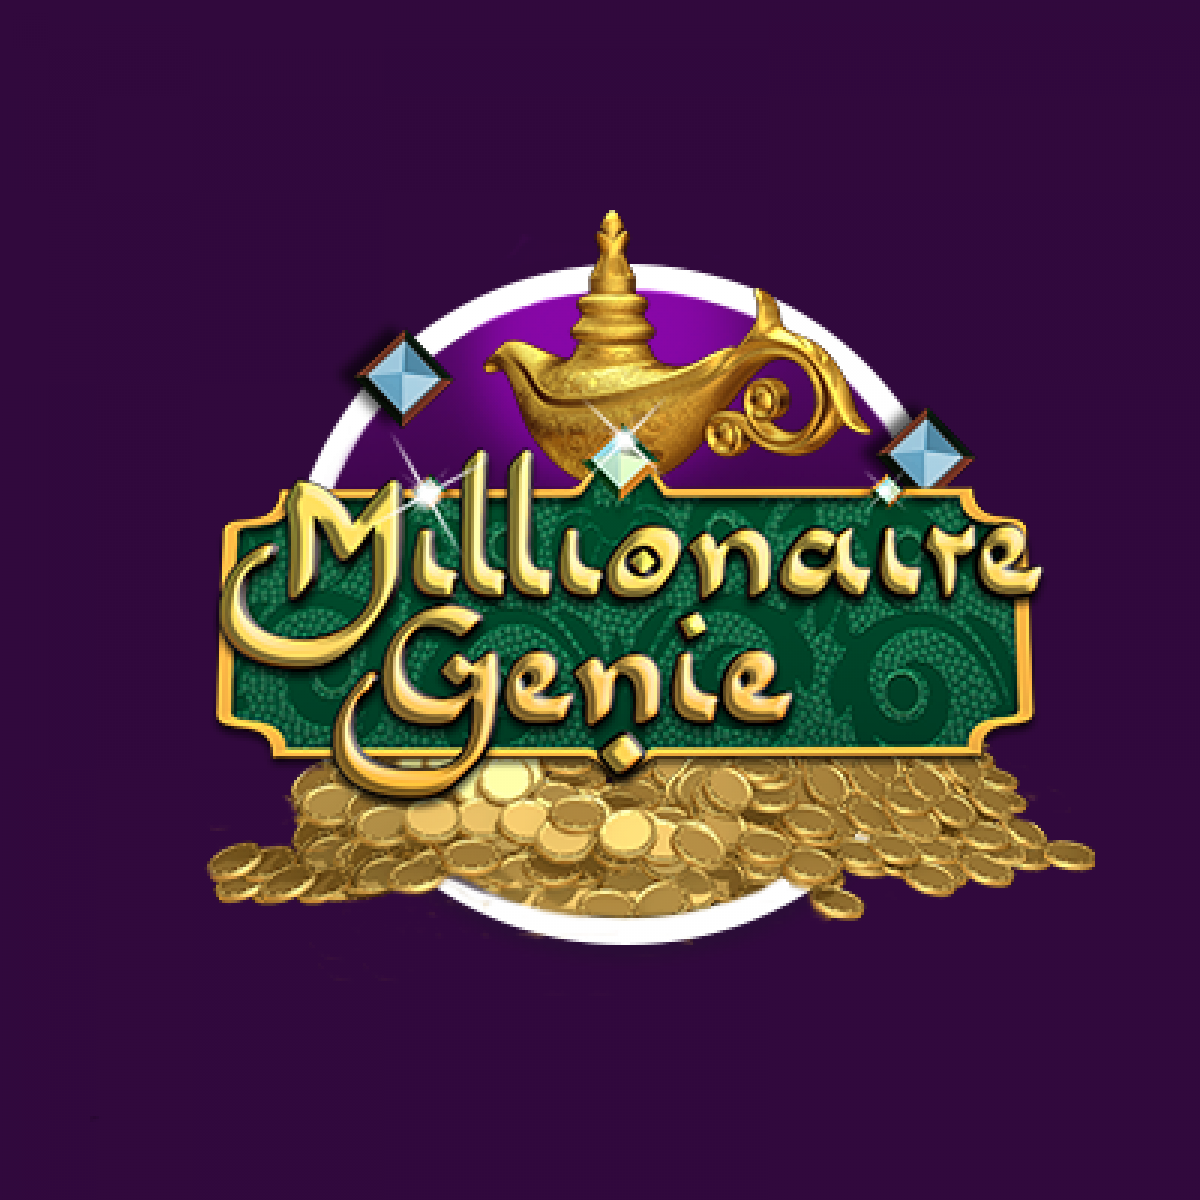 Millionaire Genie สล็อตเว็บตรง 2022